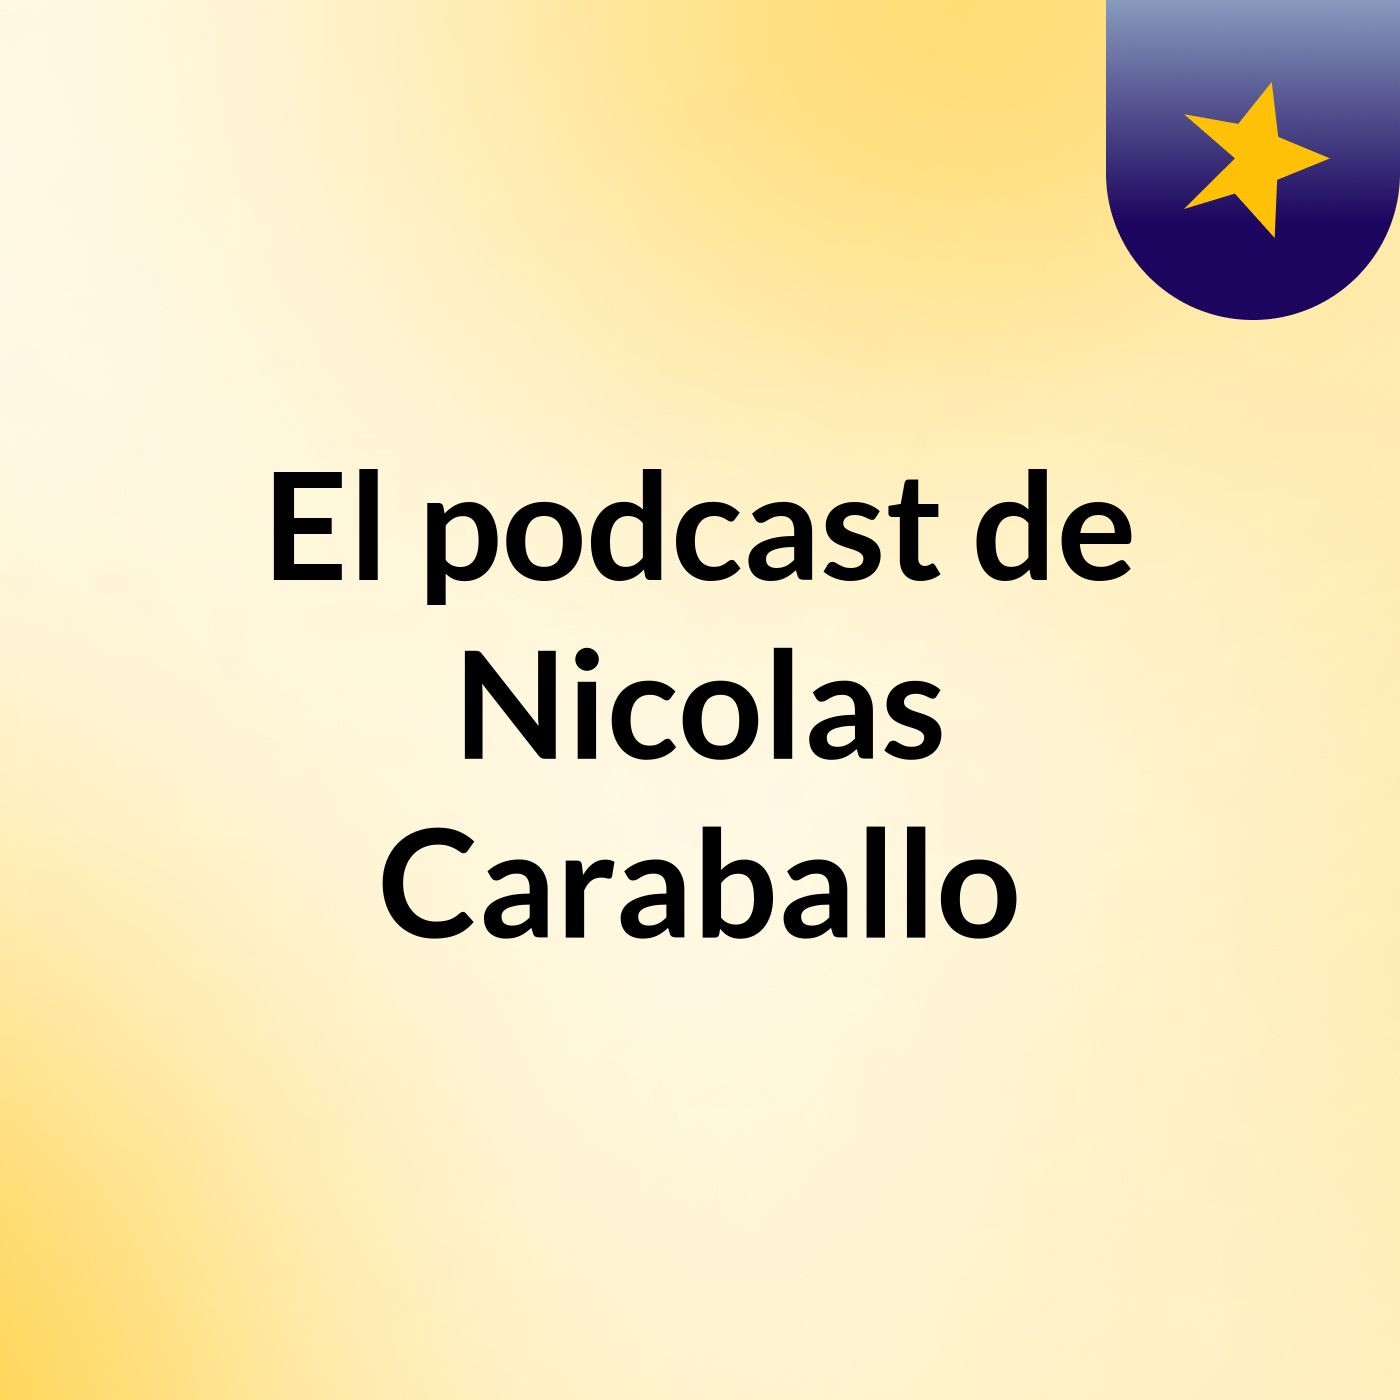 Episodio 31 - El podcast de Nicolas Caraballo